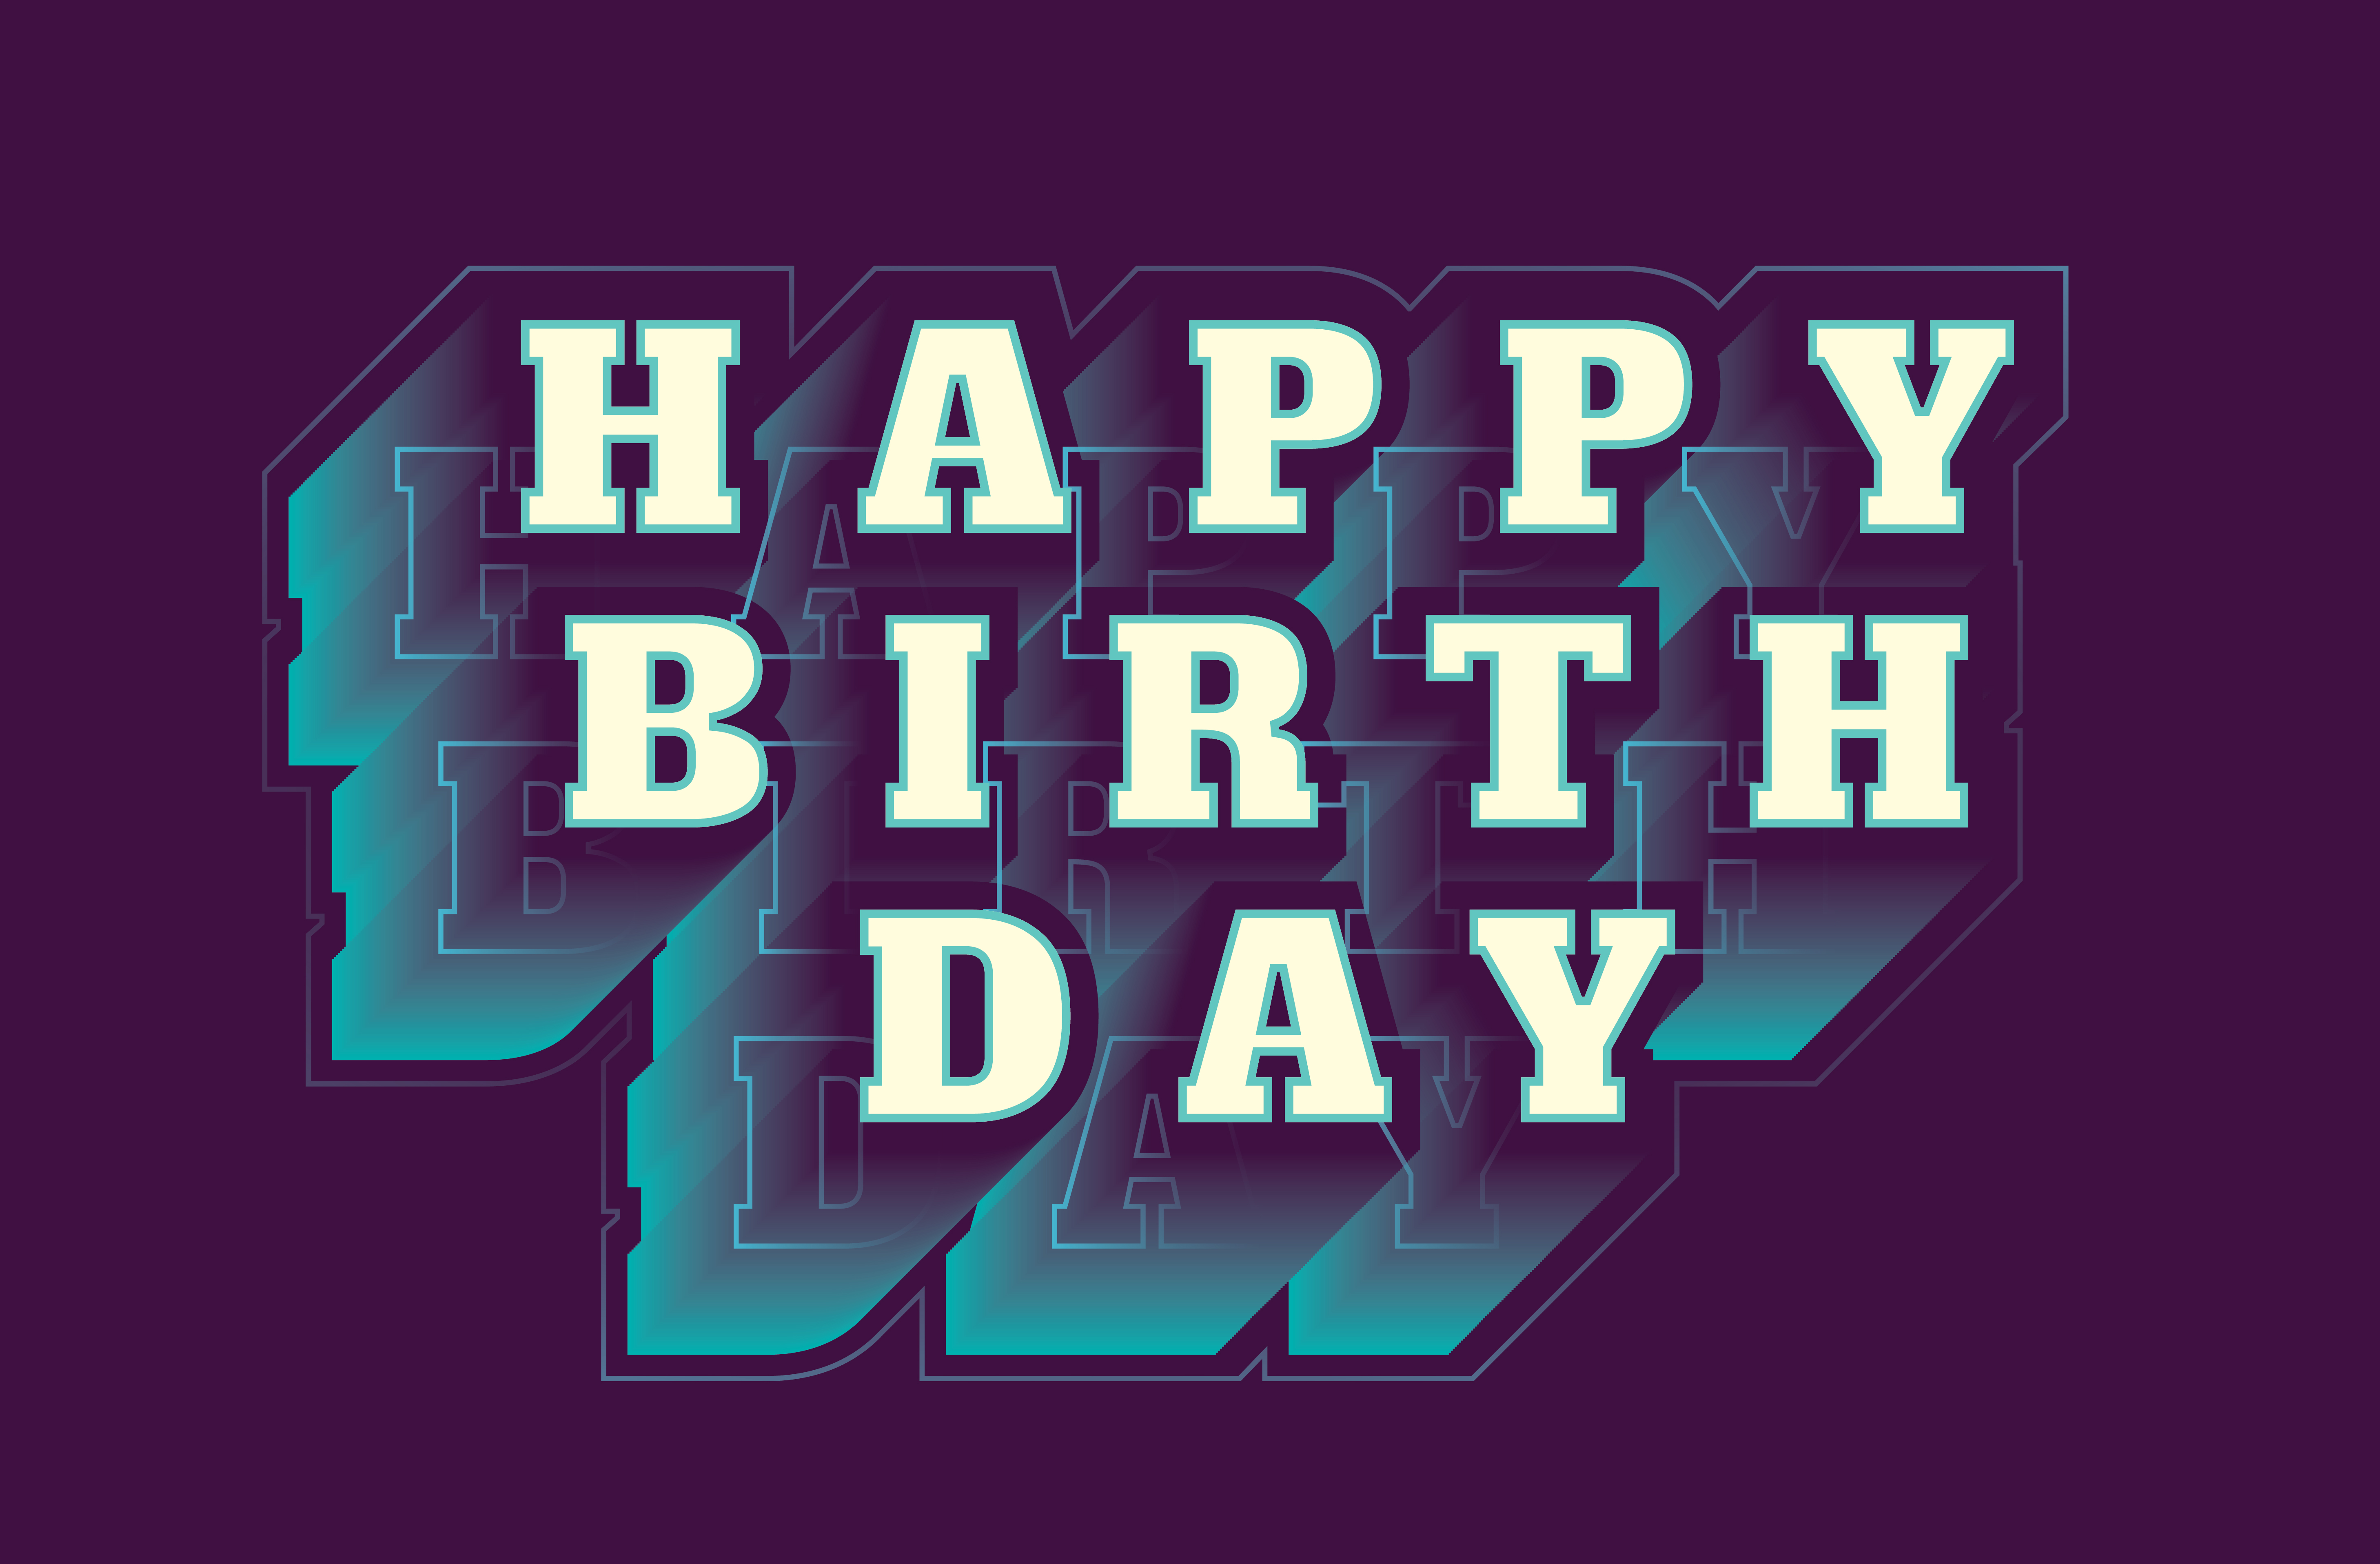 Download Happy birthday typography 556584 - Download Free Vectors, Clipart Graphics & Vector Art